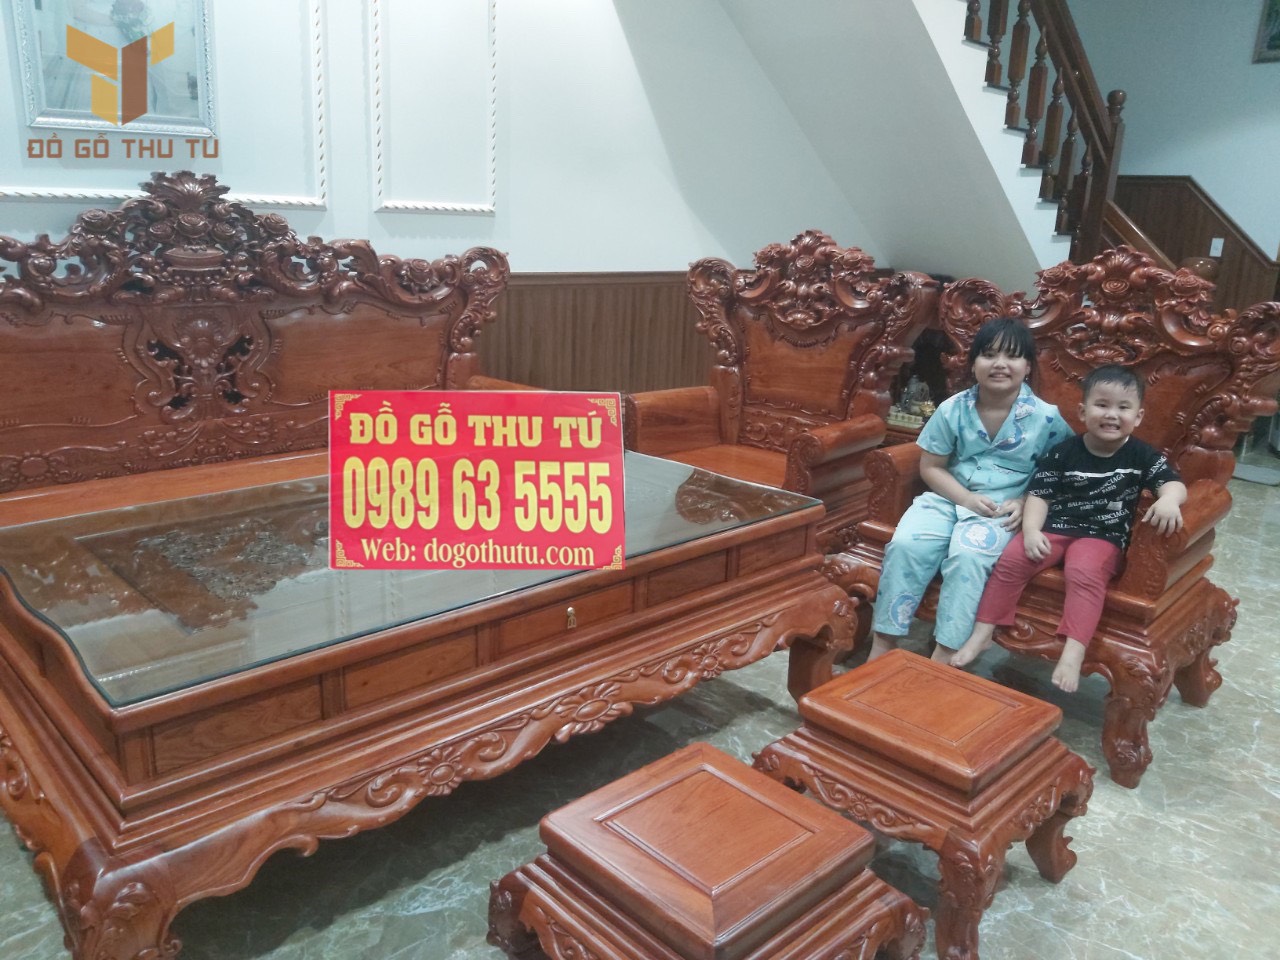 Báo giá bàn ghế Louis Hoàng Gia tại Lâm Đồng